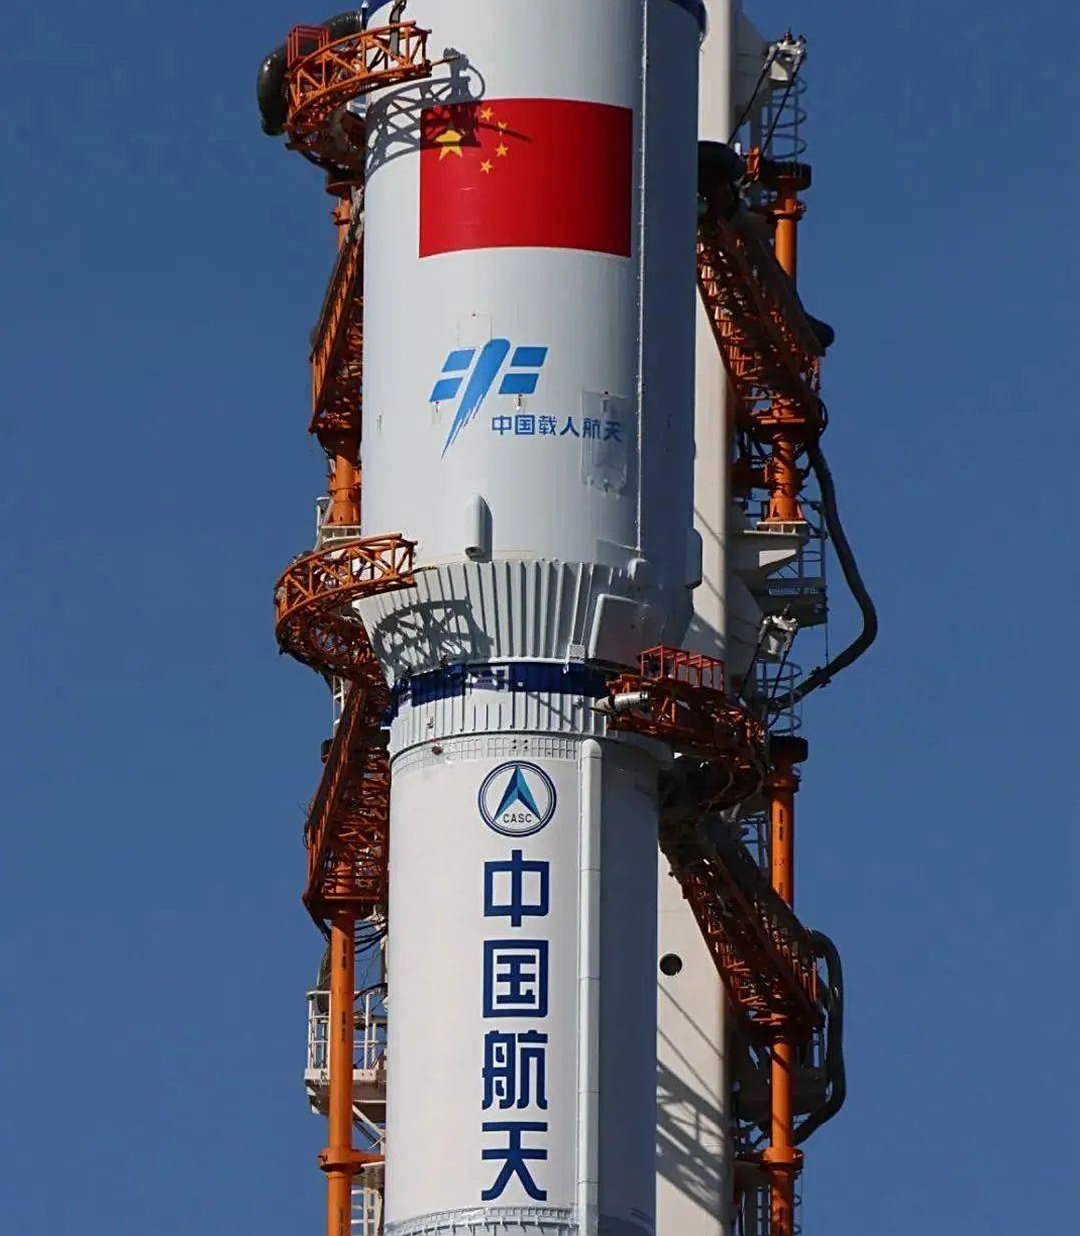 日本沖繩發現中國火箭殘骸？印著“中國載人航天”，當局已去調查-圖7